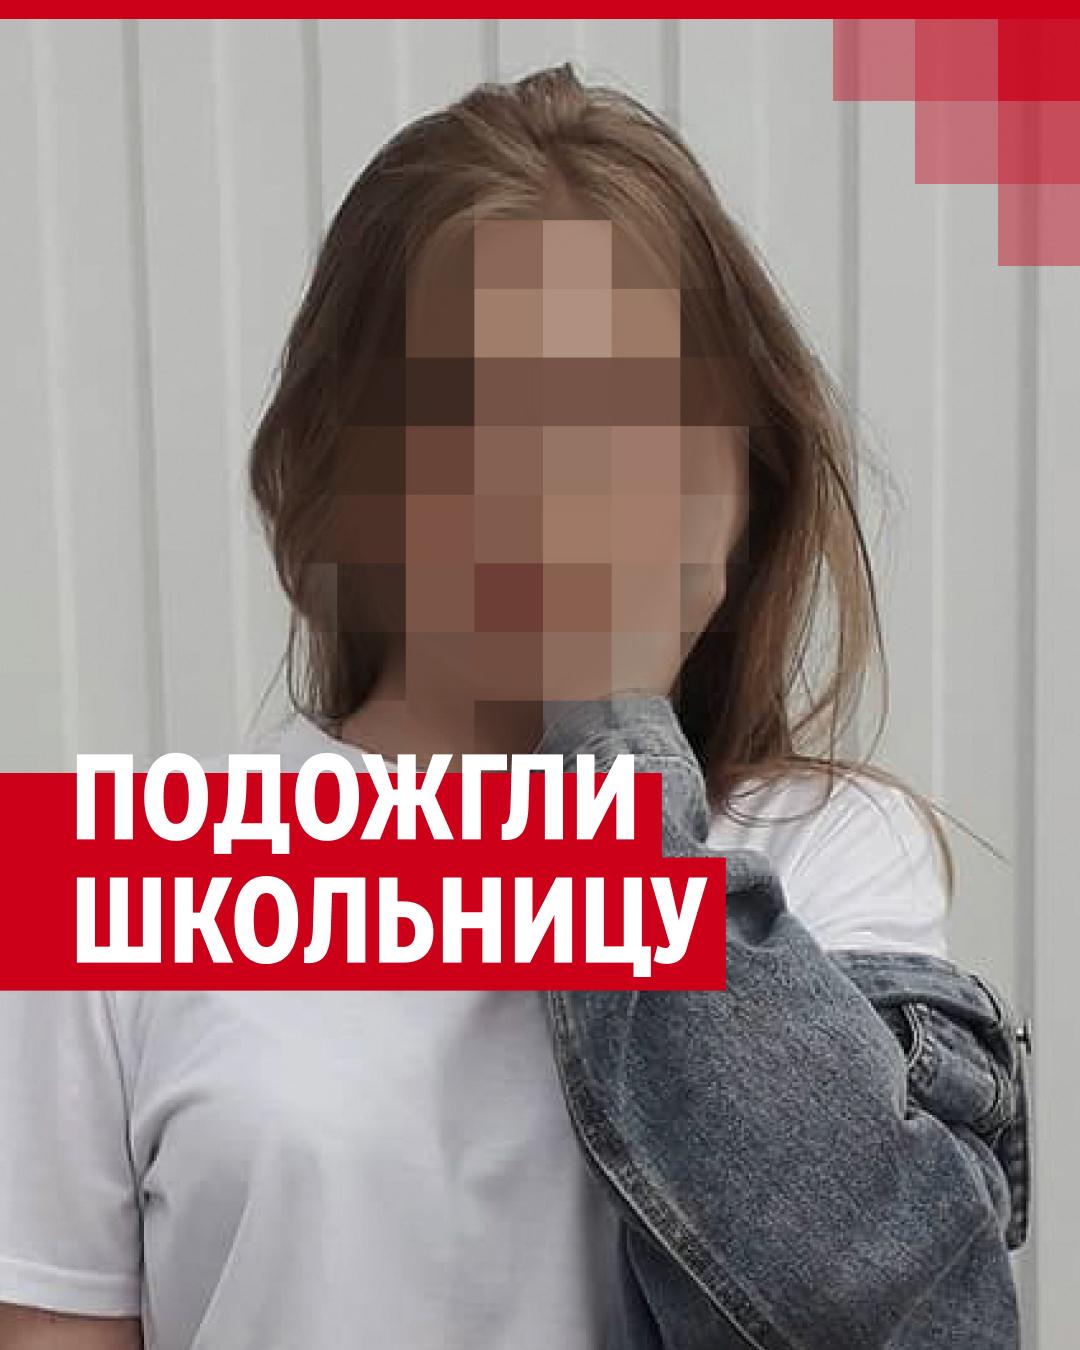 В Пермском крае подожгли и бросили на путях 16-летнюю девочку.  Подозреваемый задержан - 14 июля 2023 - 29.ru